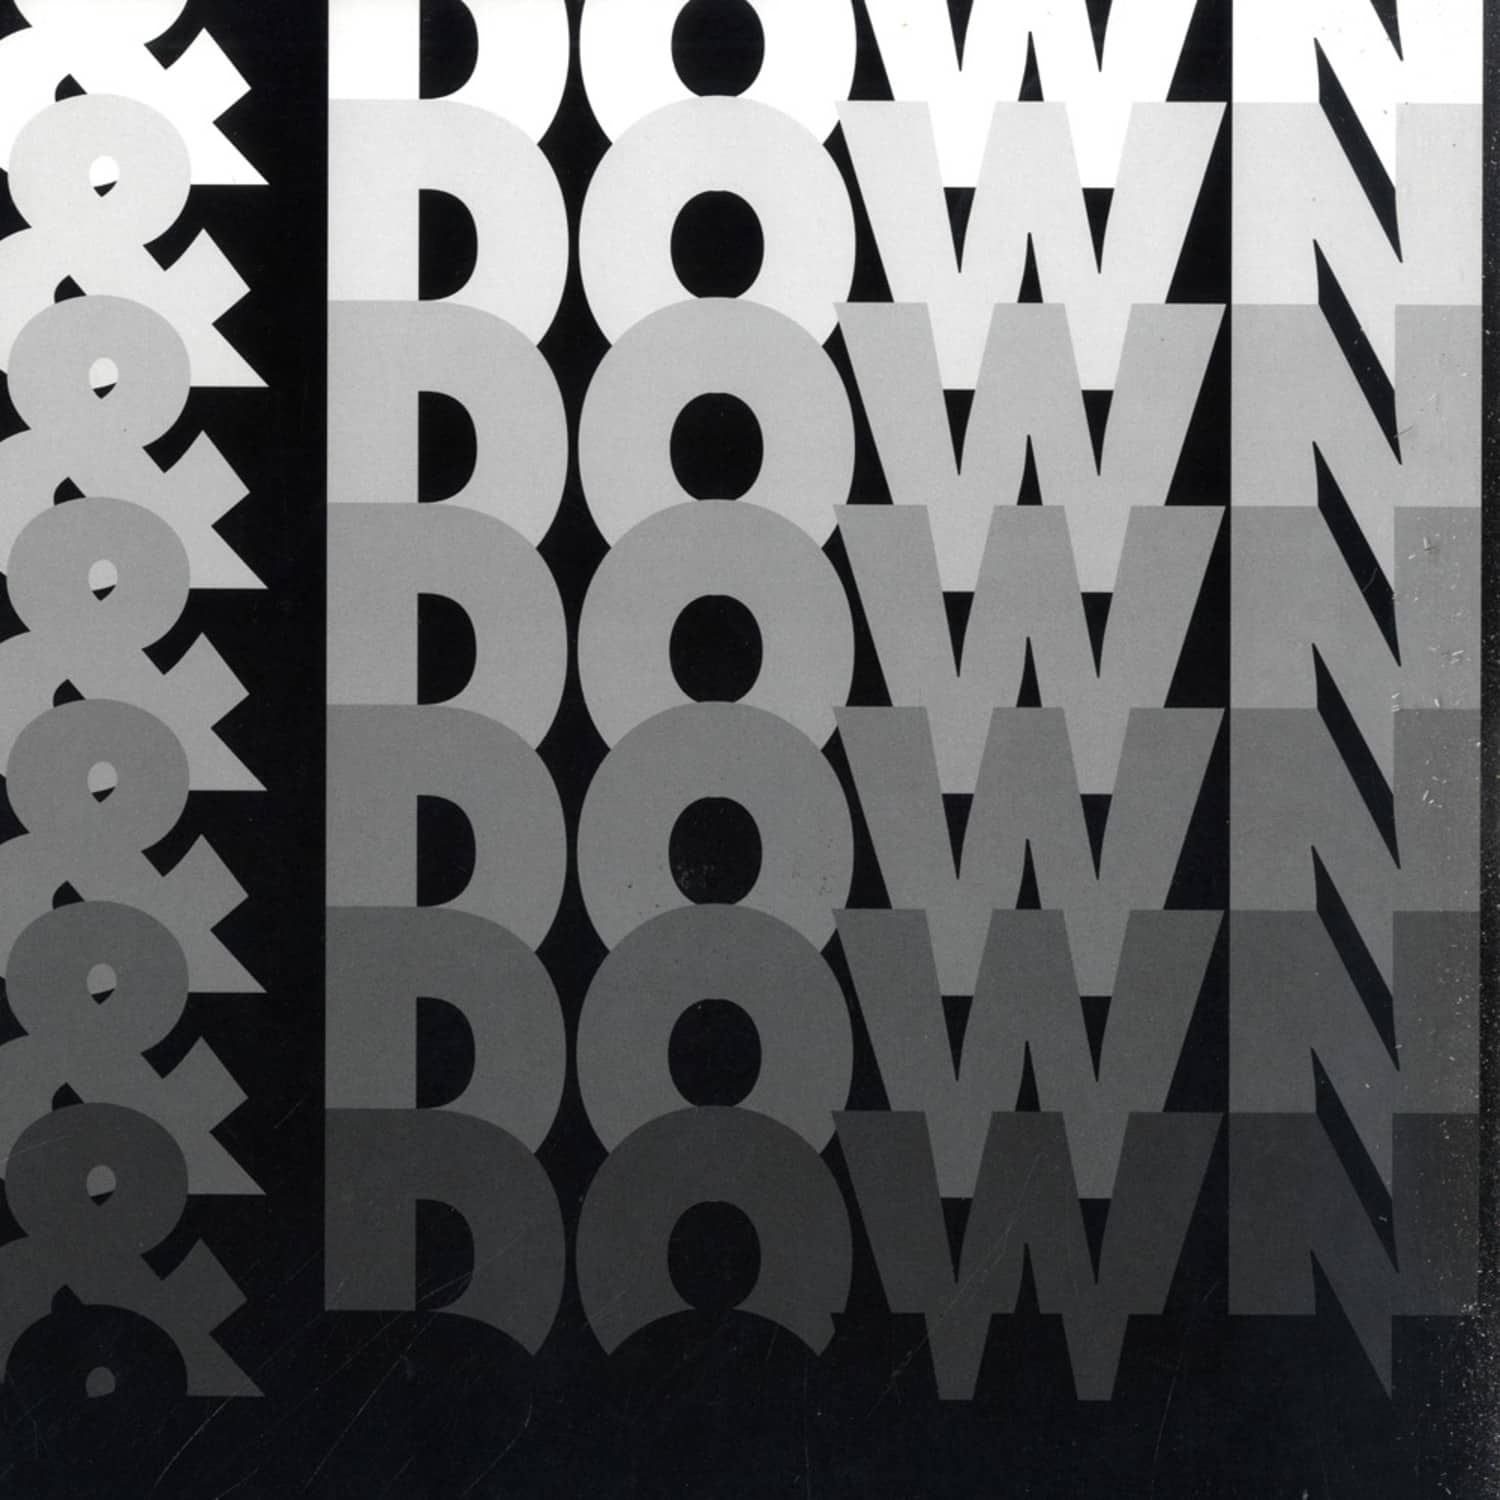 Boys Noize - DOWN